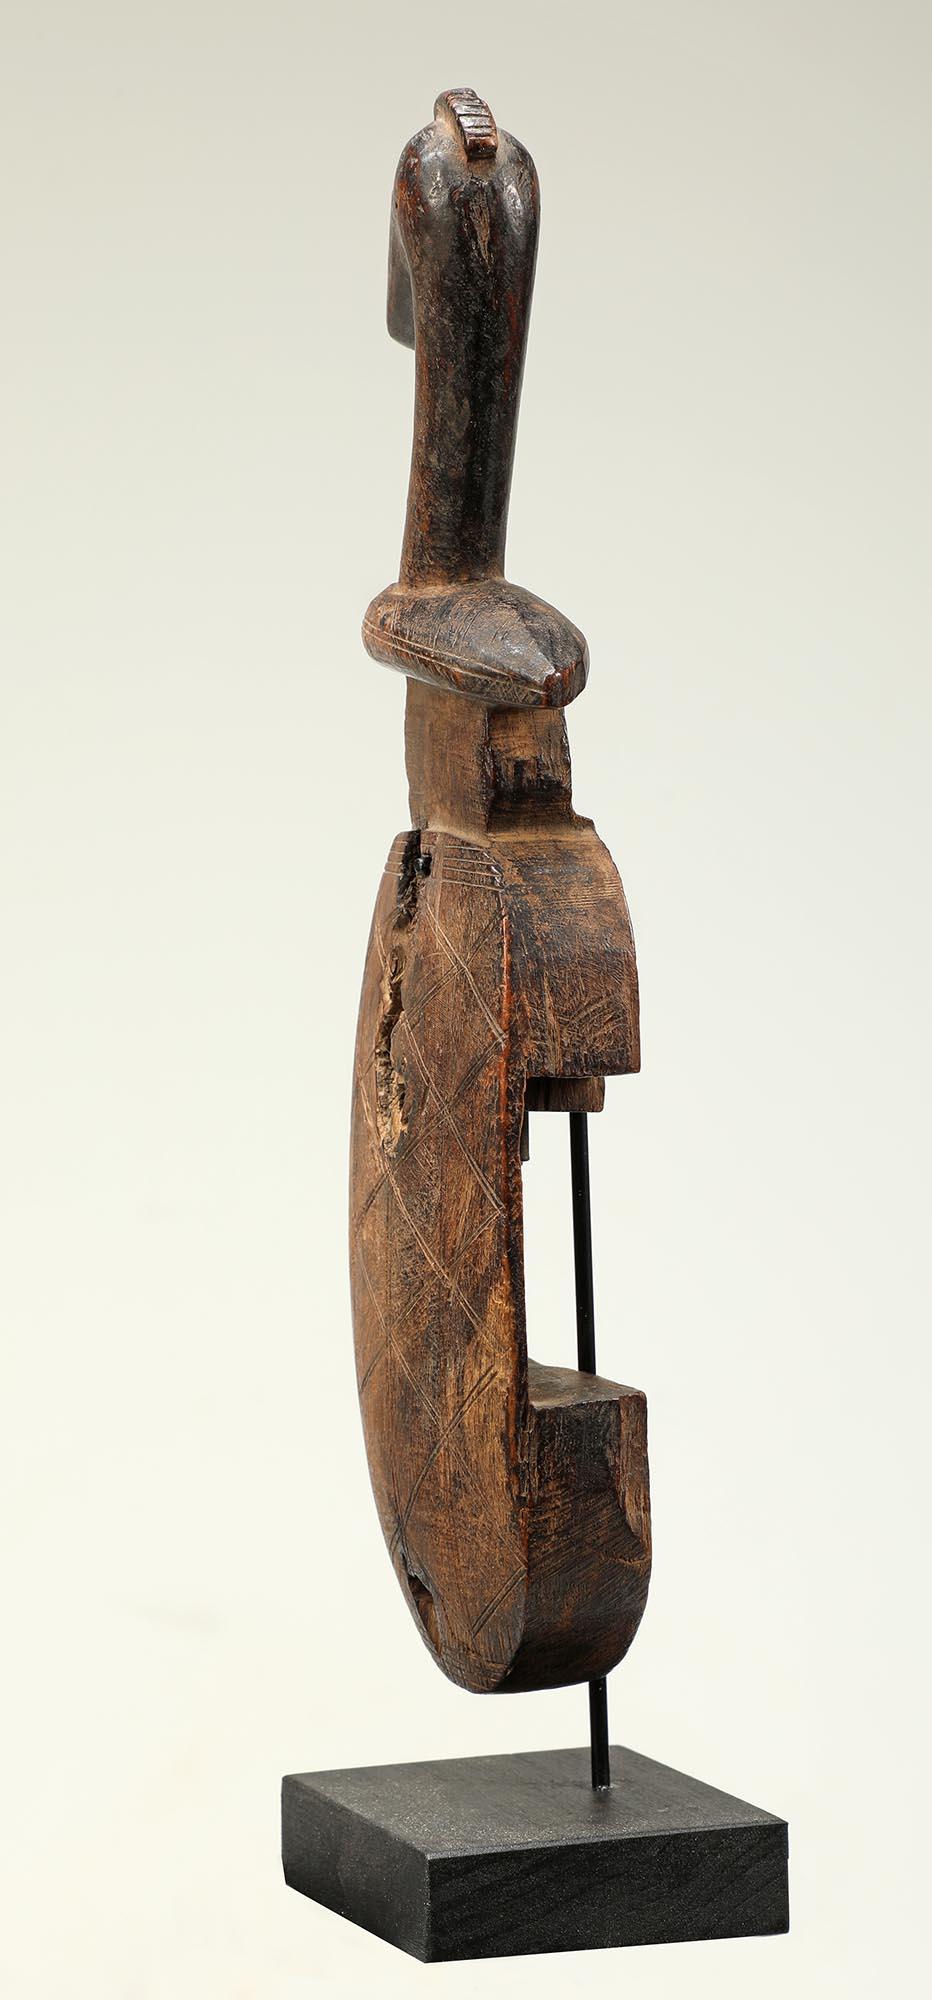 Eine sehr süße kleine Größe geschnitzten Holz Vogel gekrönt Türschloss aus der Bambara Menschen in Mali Afrika. Ursprünglich sollte er mit einem horizontalen Schiebekreuzschloss ausgestattet sein, das jetzt fehlt. Montiert auf einem speziell